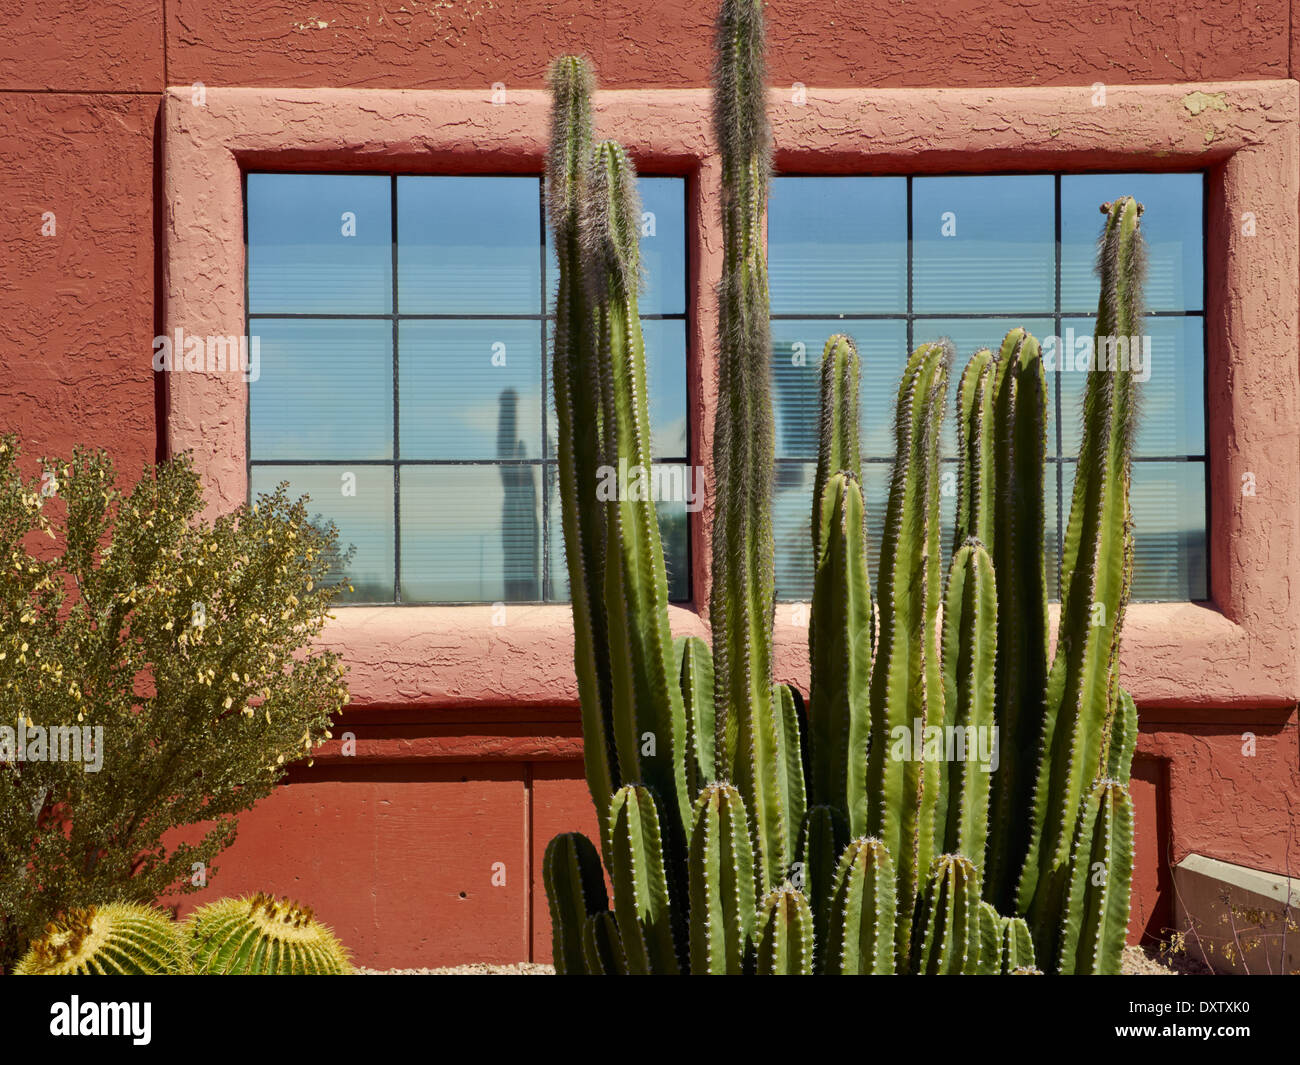 Downtown Details, Tucson, Arizona, USA Stock Photo